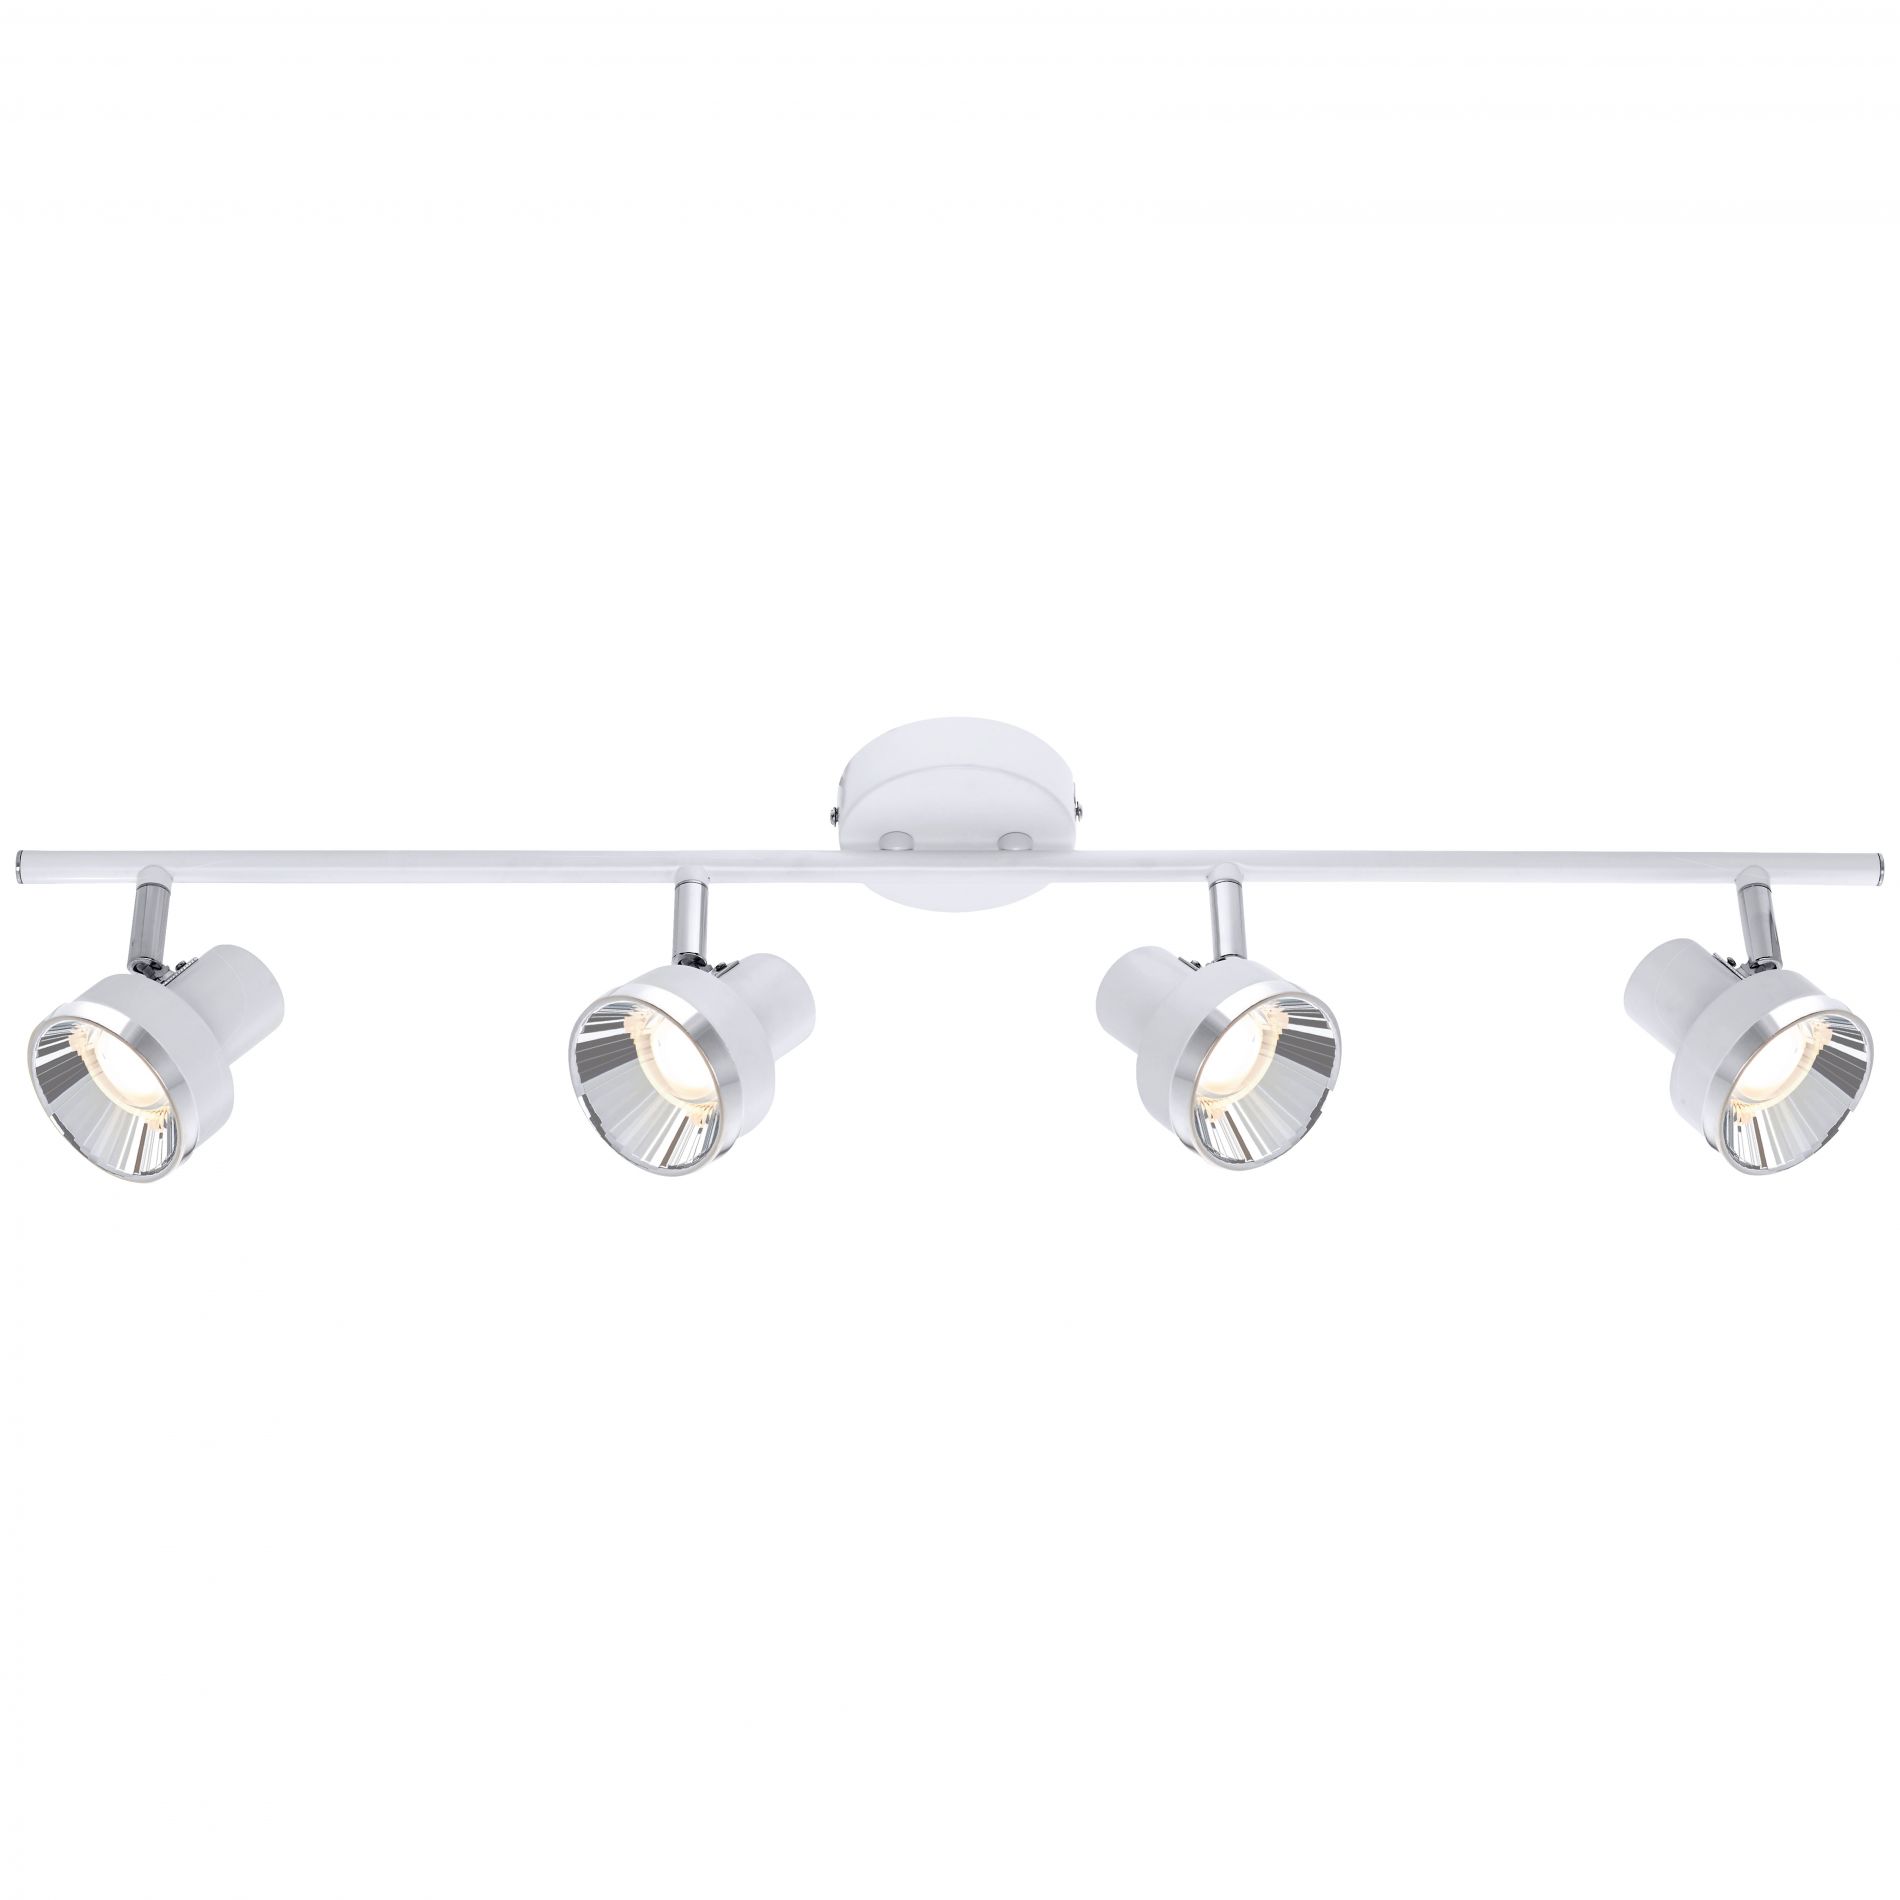 Réglette 4 spots LED orientables COLOR blanc mat en métal